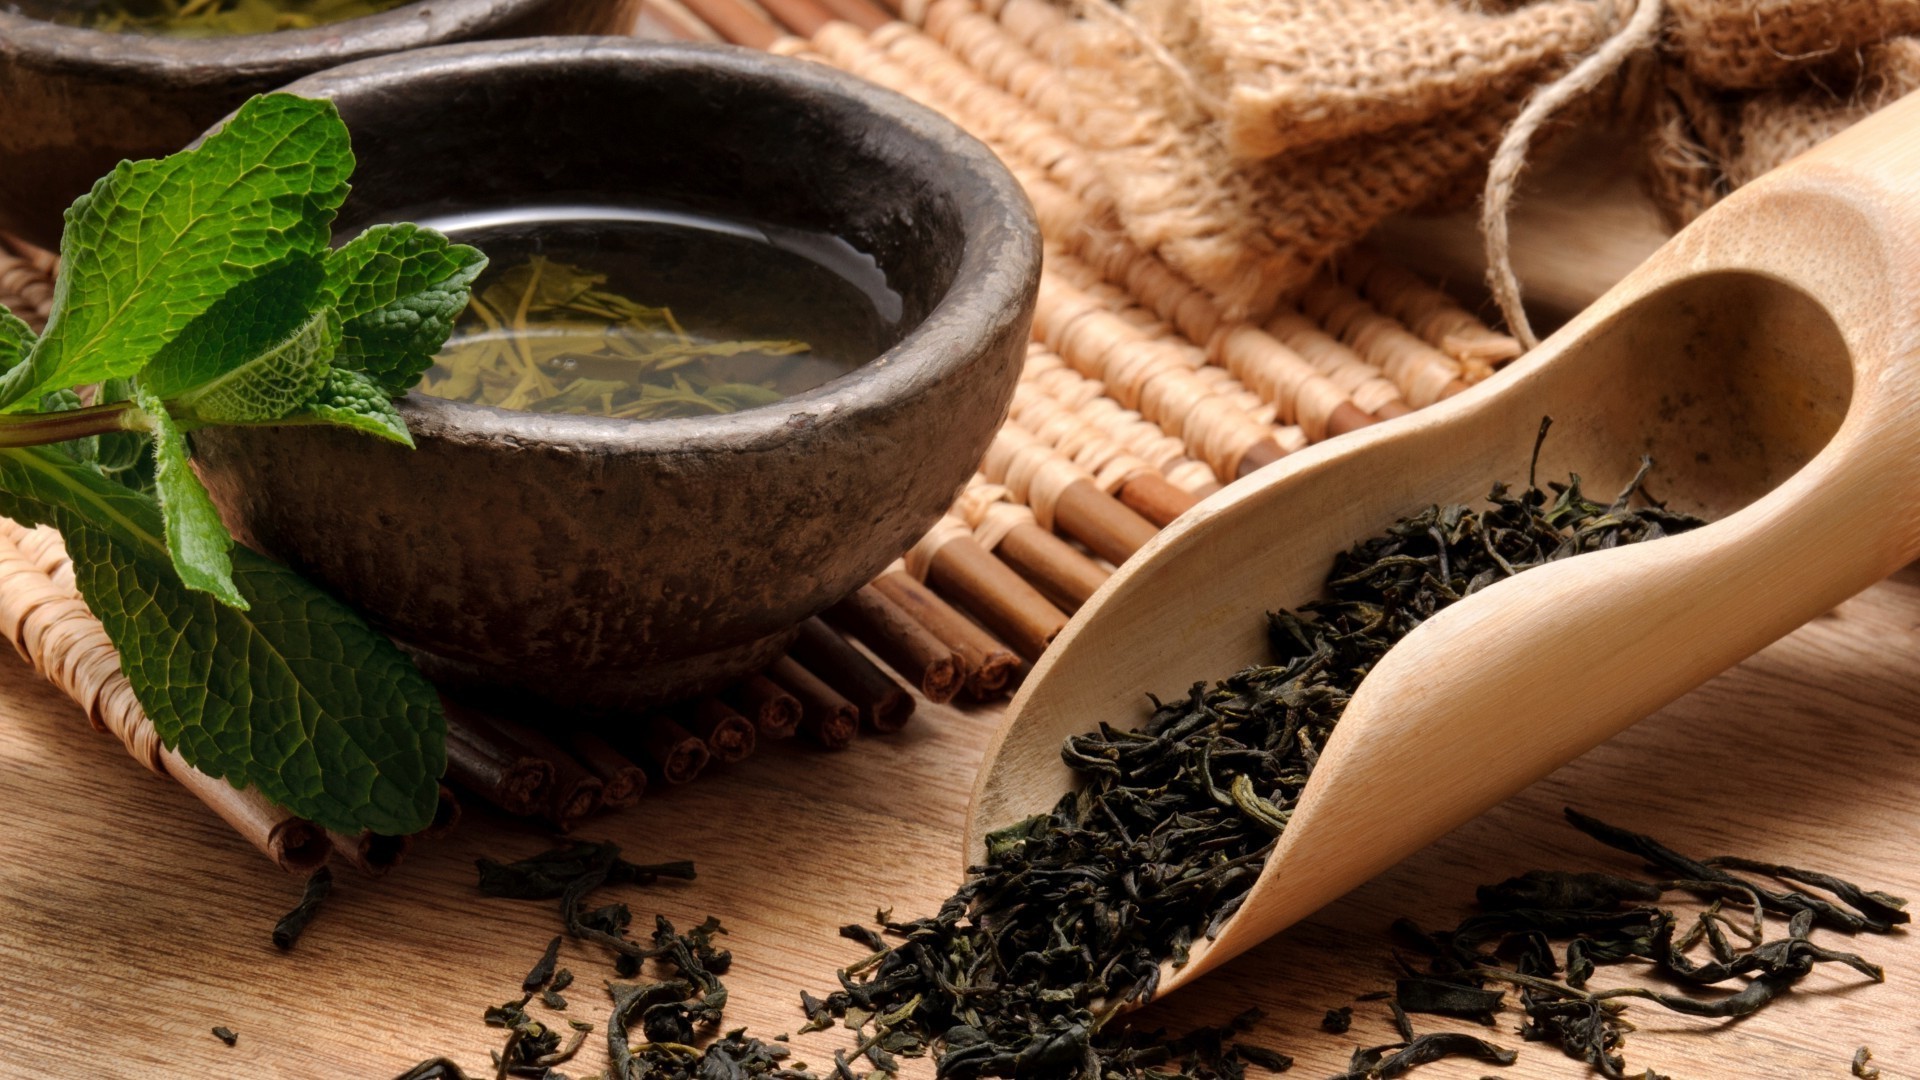 чай травяной травы медицина еда древесины лист натюрморт пить ложка ароматические деревянные чаша спайс горячая альтернатива